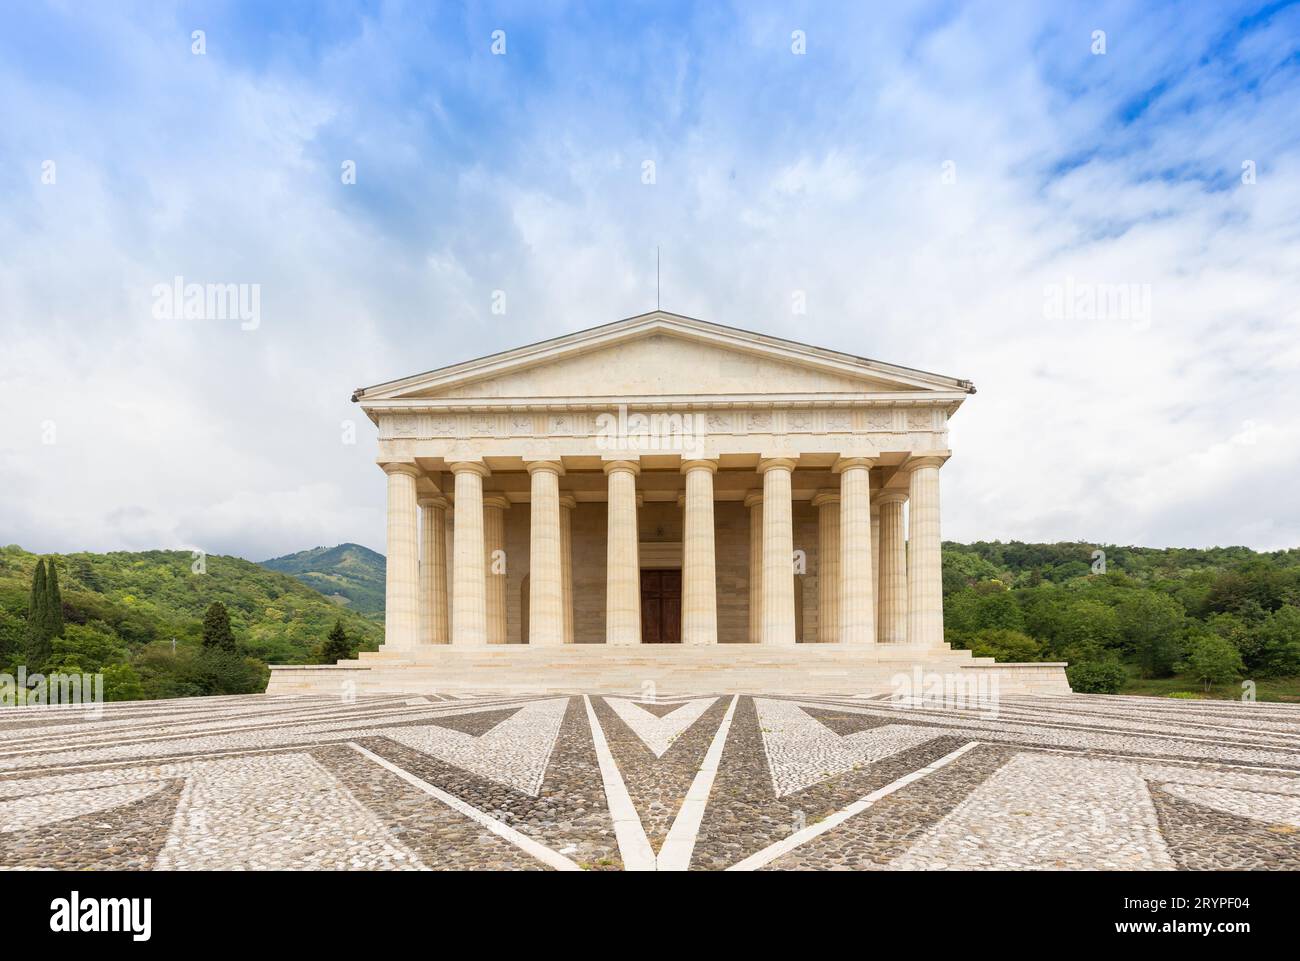 Possagno, Italien. Tempel von Antonio Canova mit klassischer Kolonnade und Pantheon-Design. Stockfoto